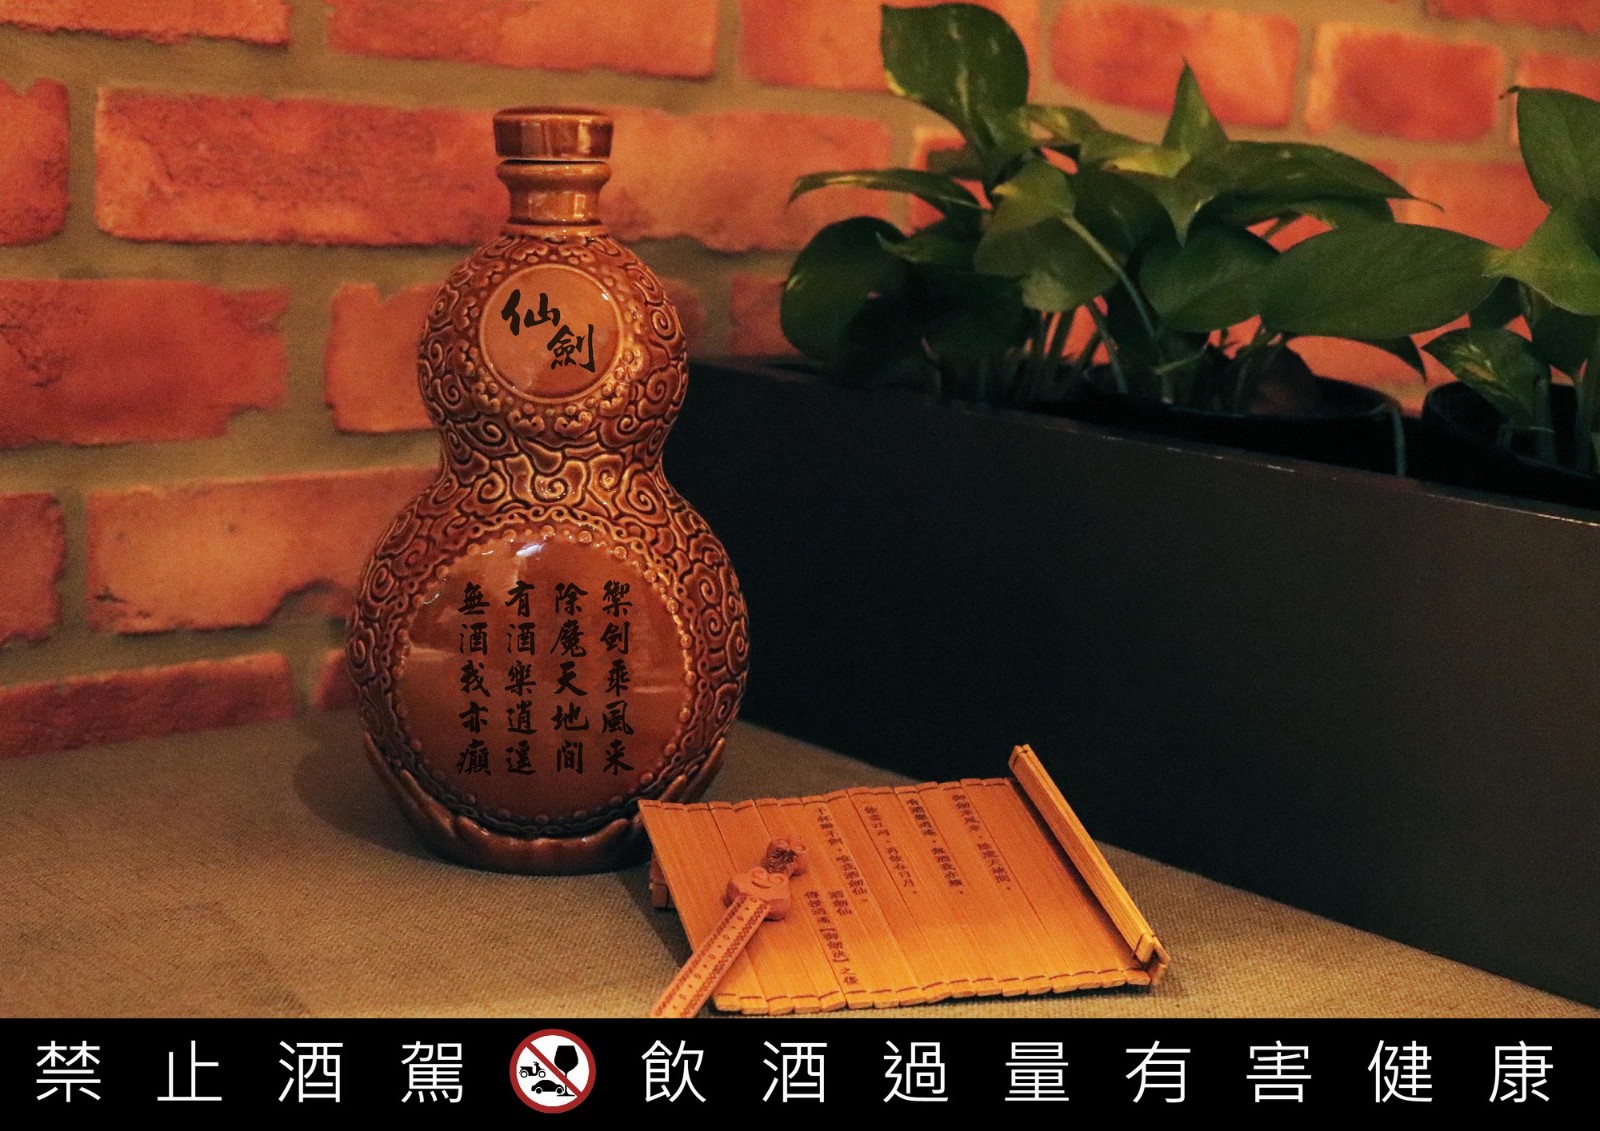 《仙剑》推出限量版葫芦造型纪念酒 你值得拥有